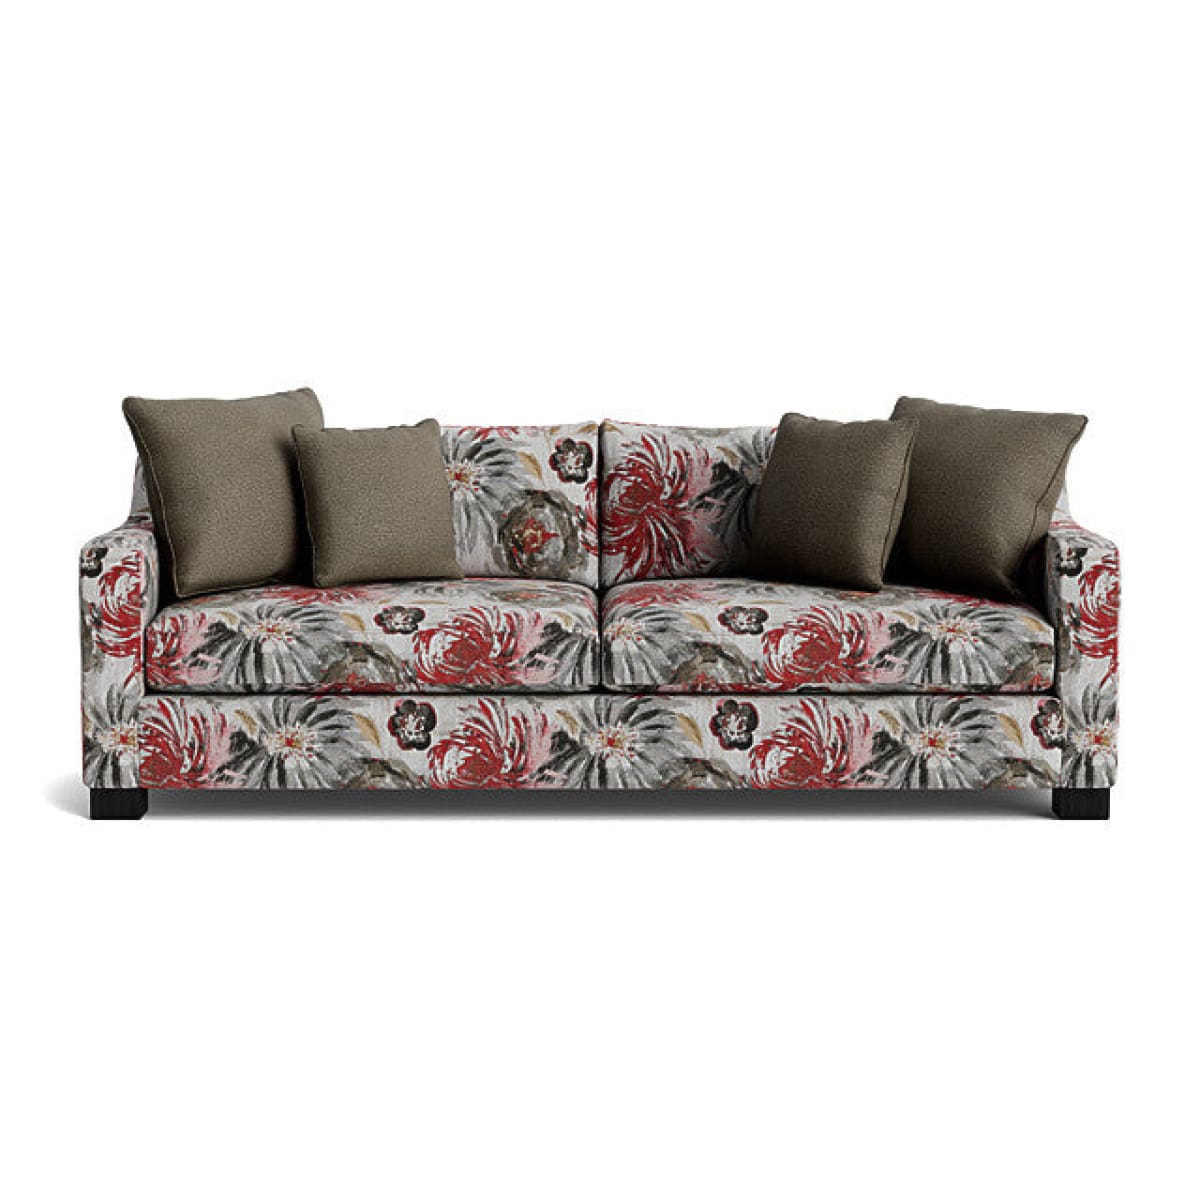 Ewing Sofa - Sectional - Crysanthemum Scarlet